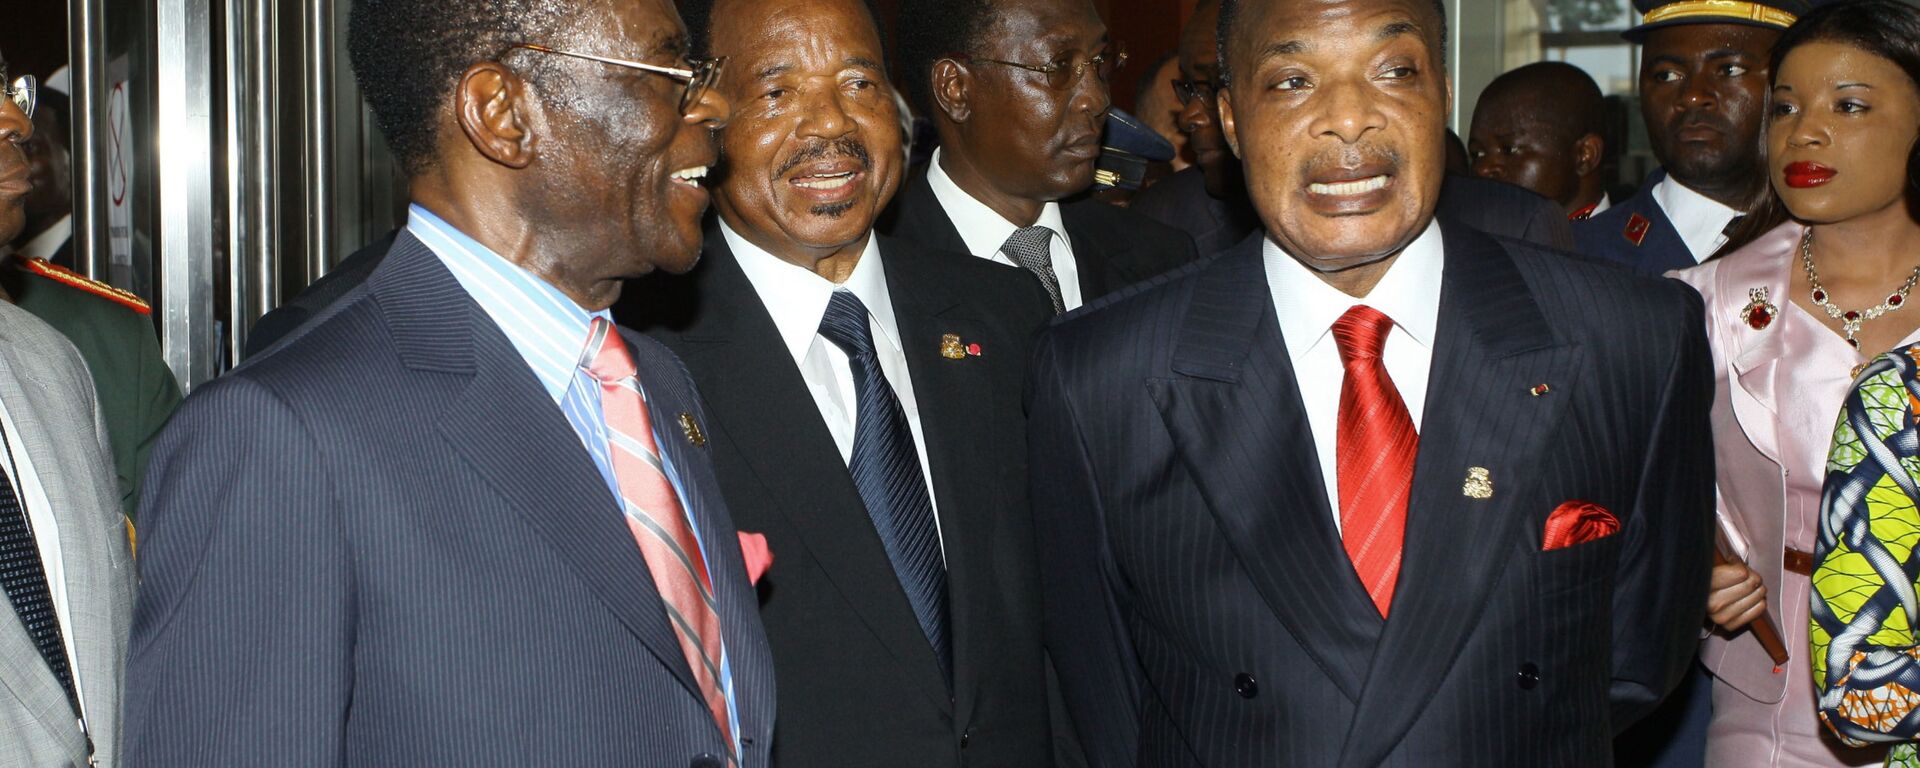 Le Président équato-guinéen Theodoro Obiang Nguema et le Président camerounais Paul Biya. - Sputnik Afrique, 1920, 09.04.2020